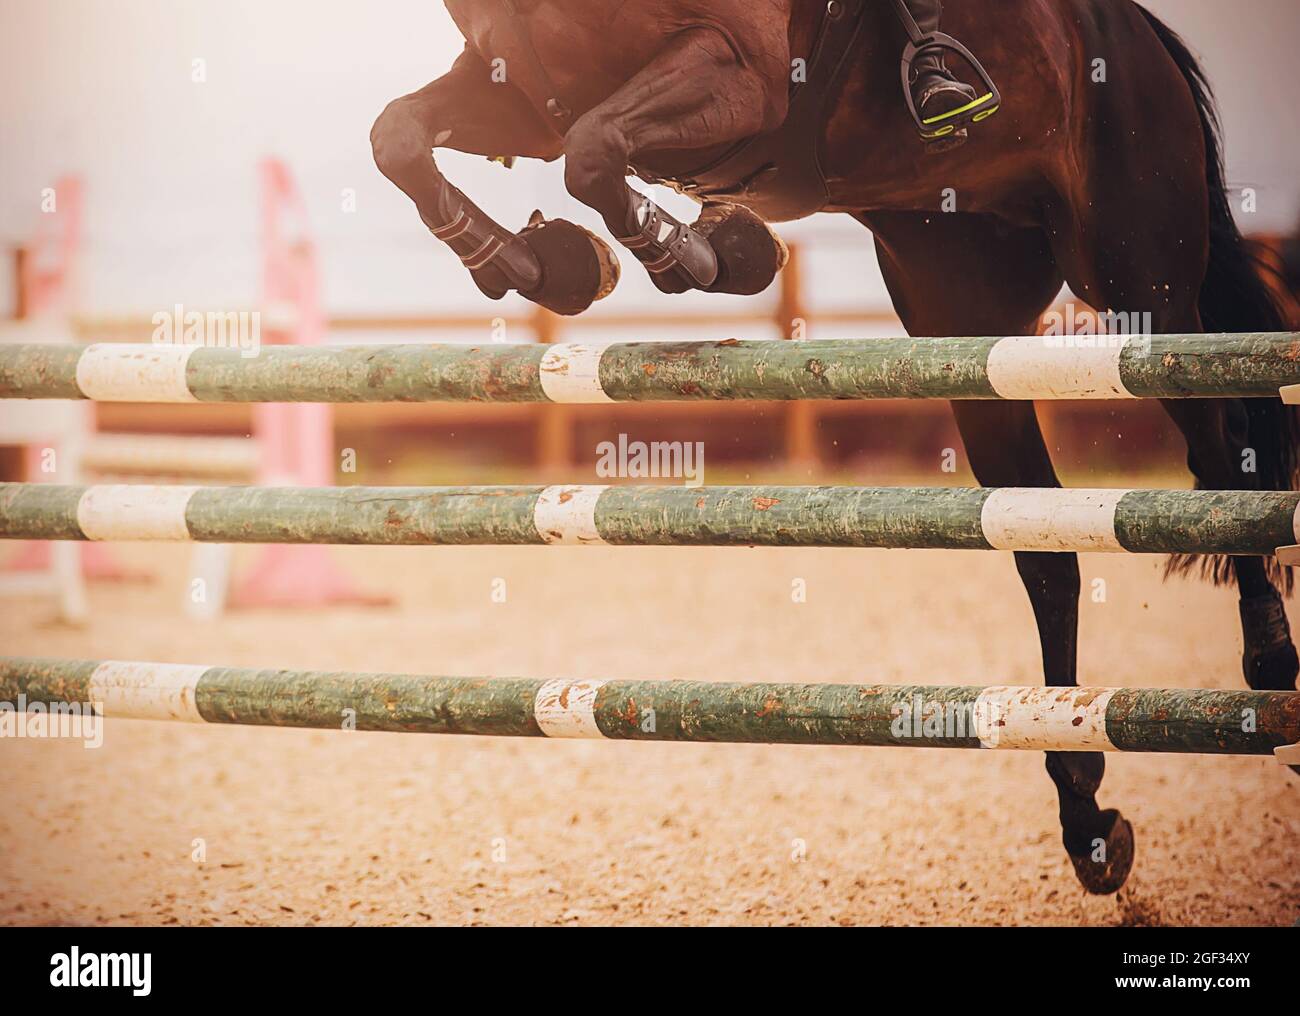 Ein dunkles Lorbeer-Rennpferd mit einem Reiter im Sattel springt bei einem Springen über eine grüne Holzbarriere. Reitsport. Reiten. Stockfoto